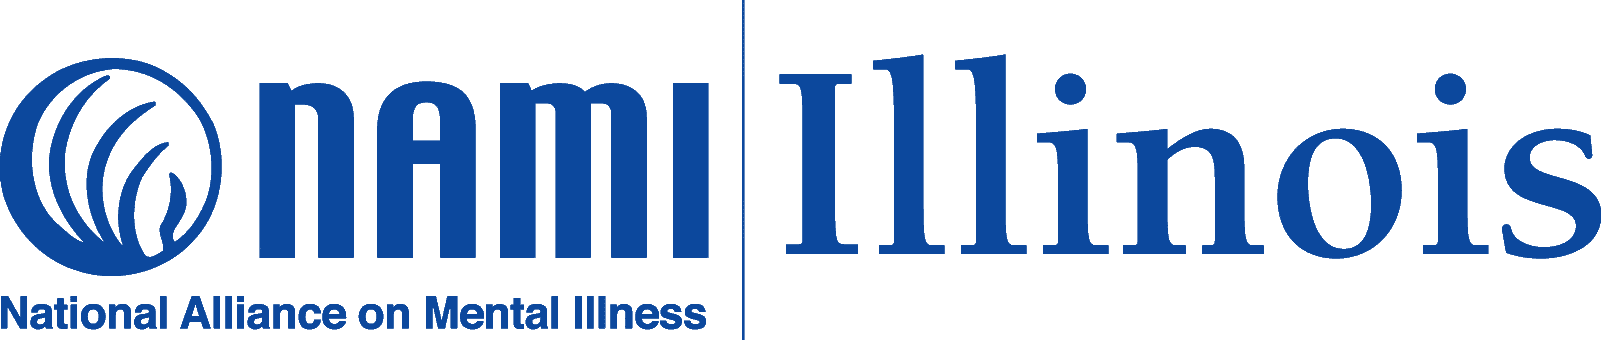 التحالف الوطني للصحة العقلية (NAMI) شعار إلينوي